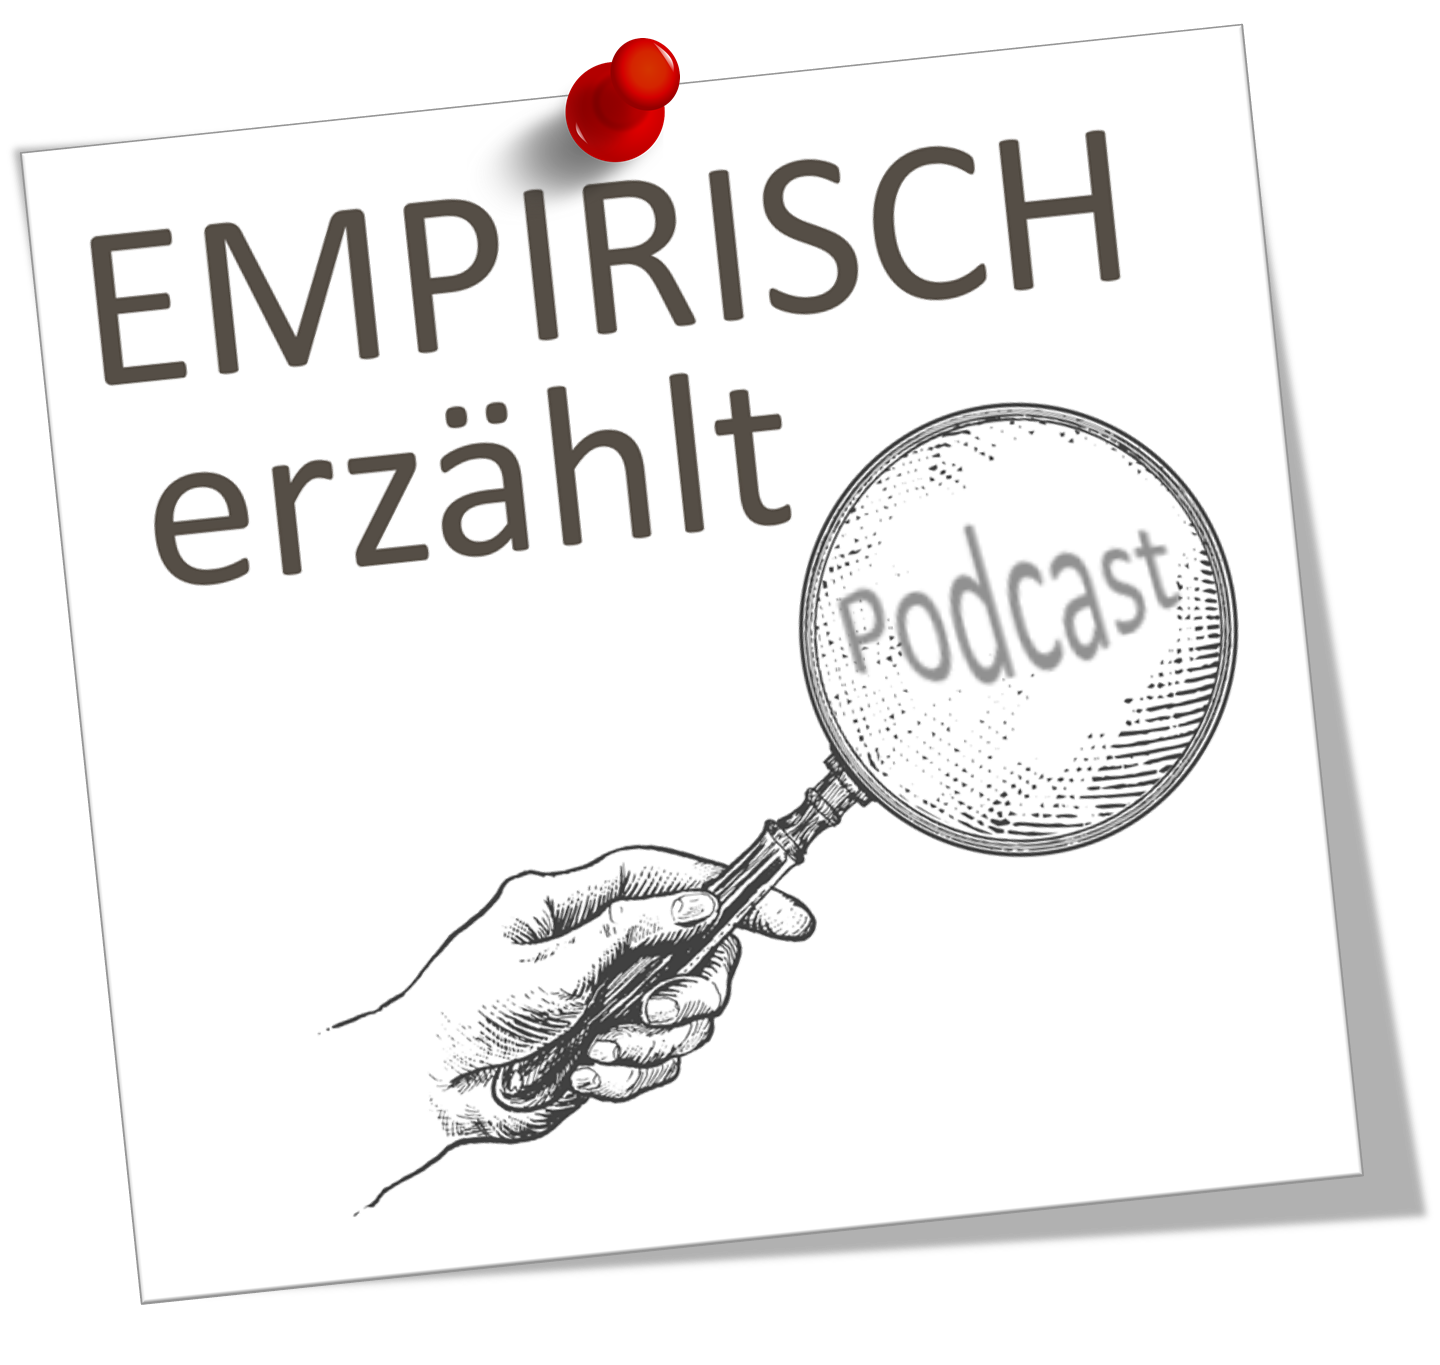 Empirisch Erzählt (Wissenschaft & Geschichte)